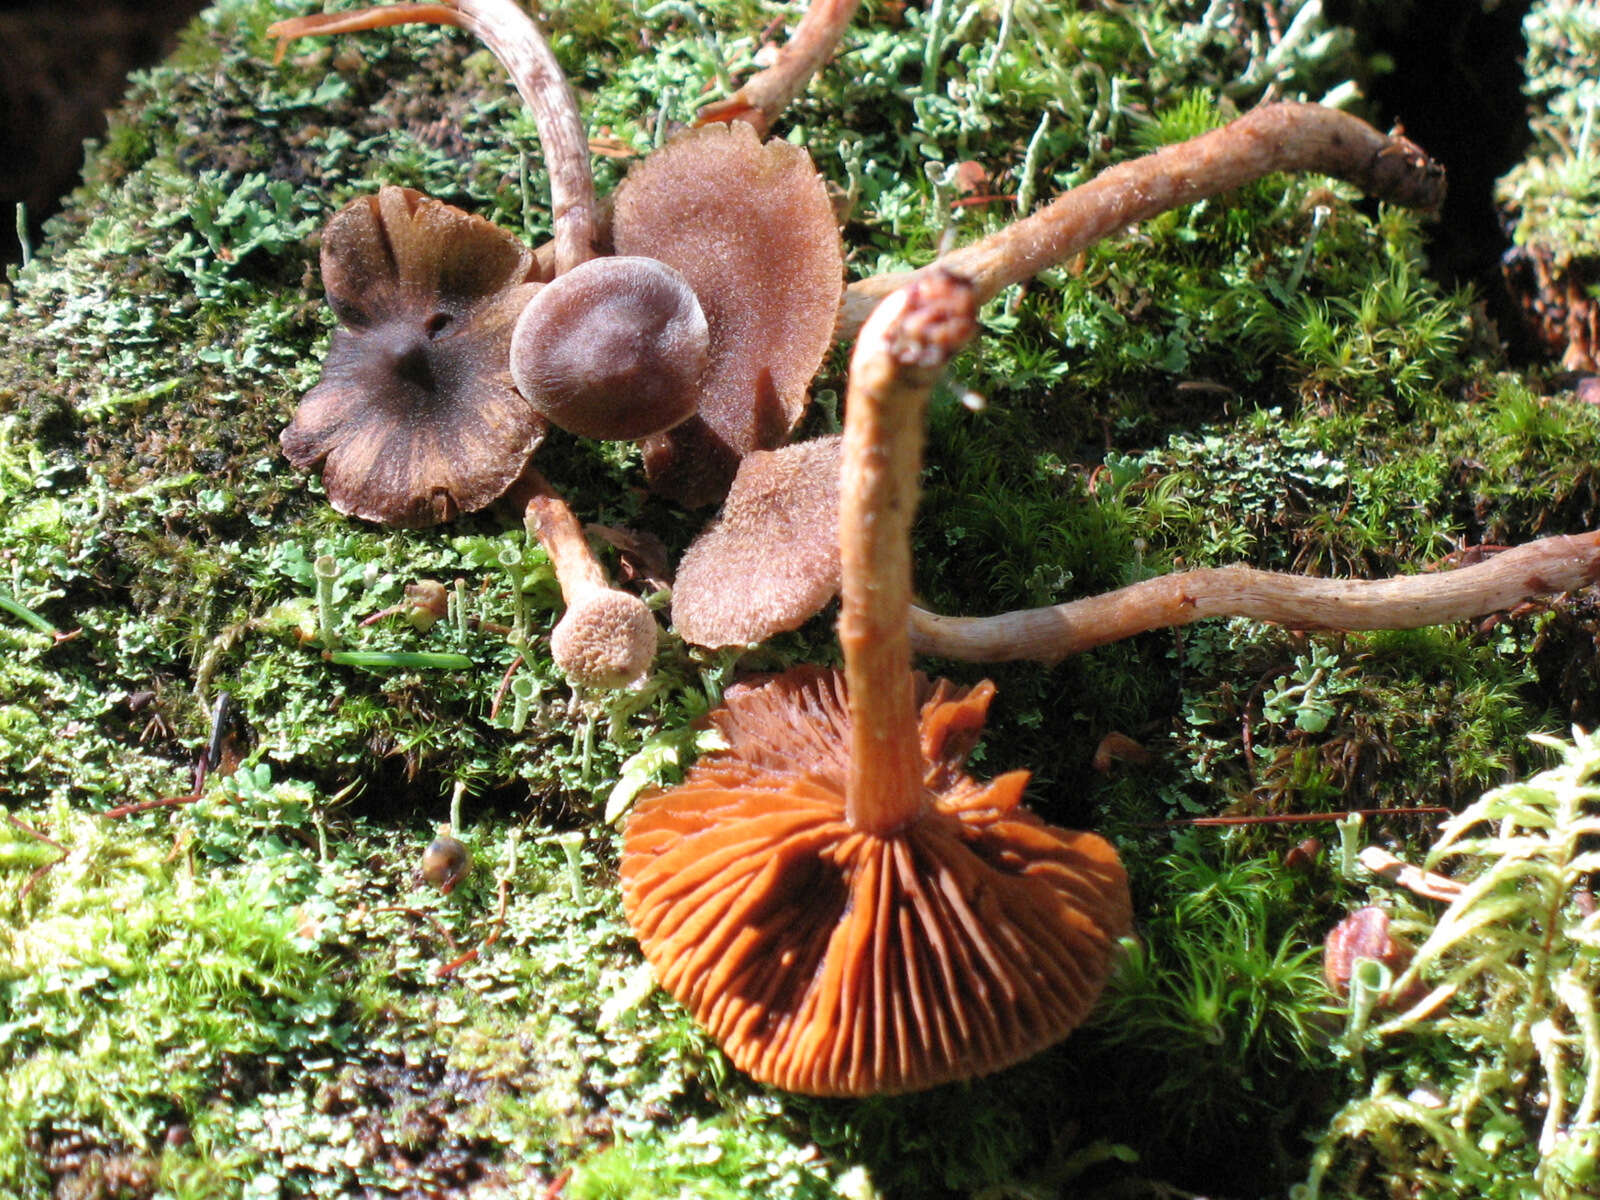 Image of Pelargonium Webcap